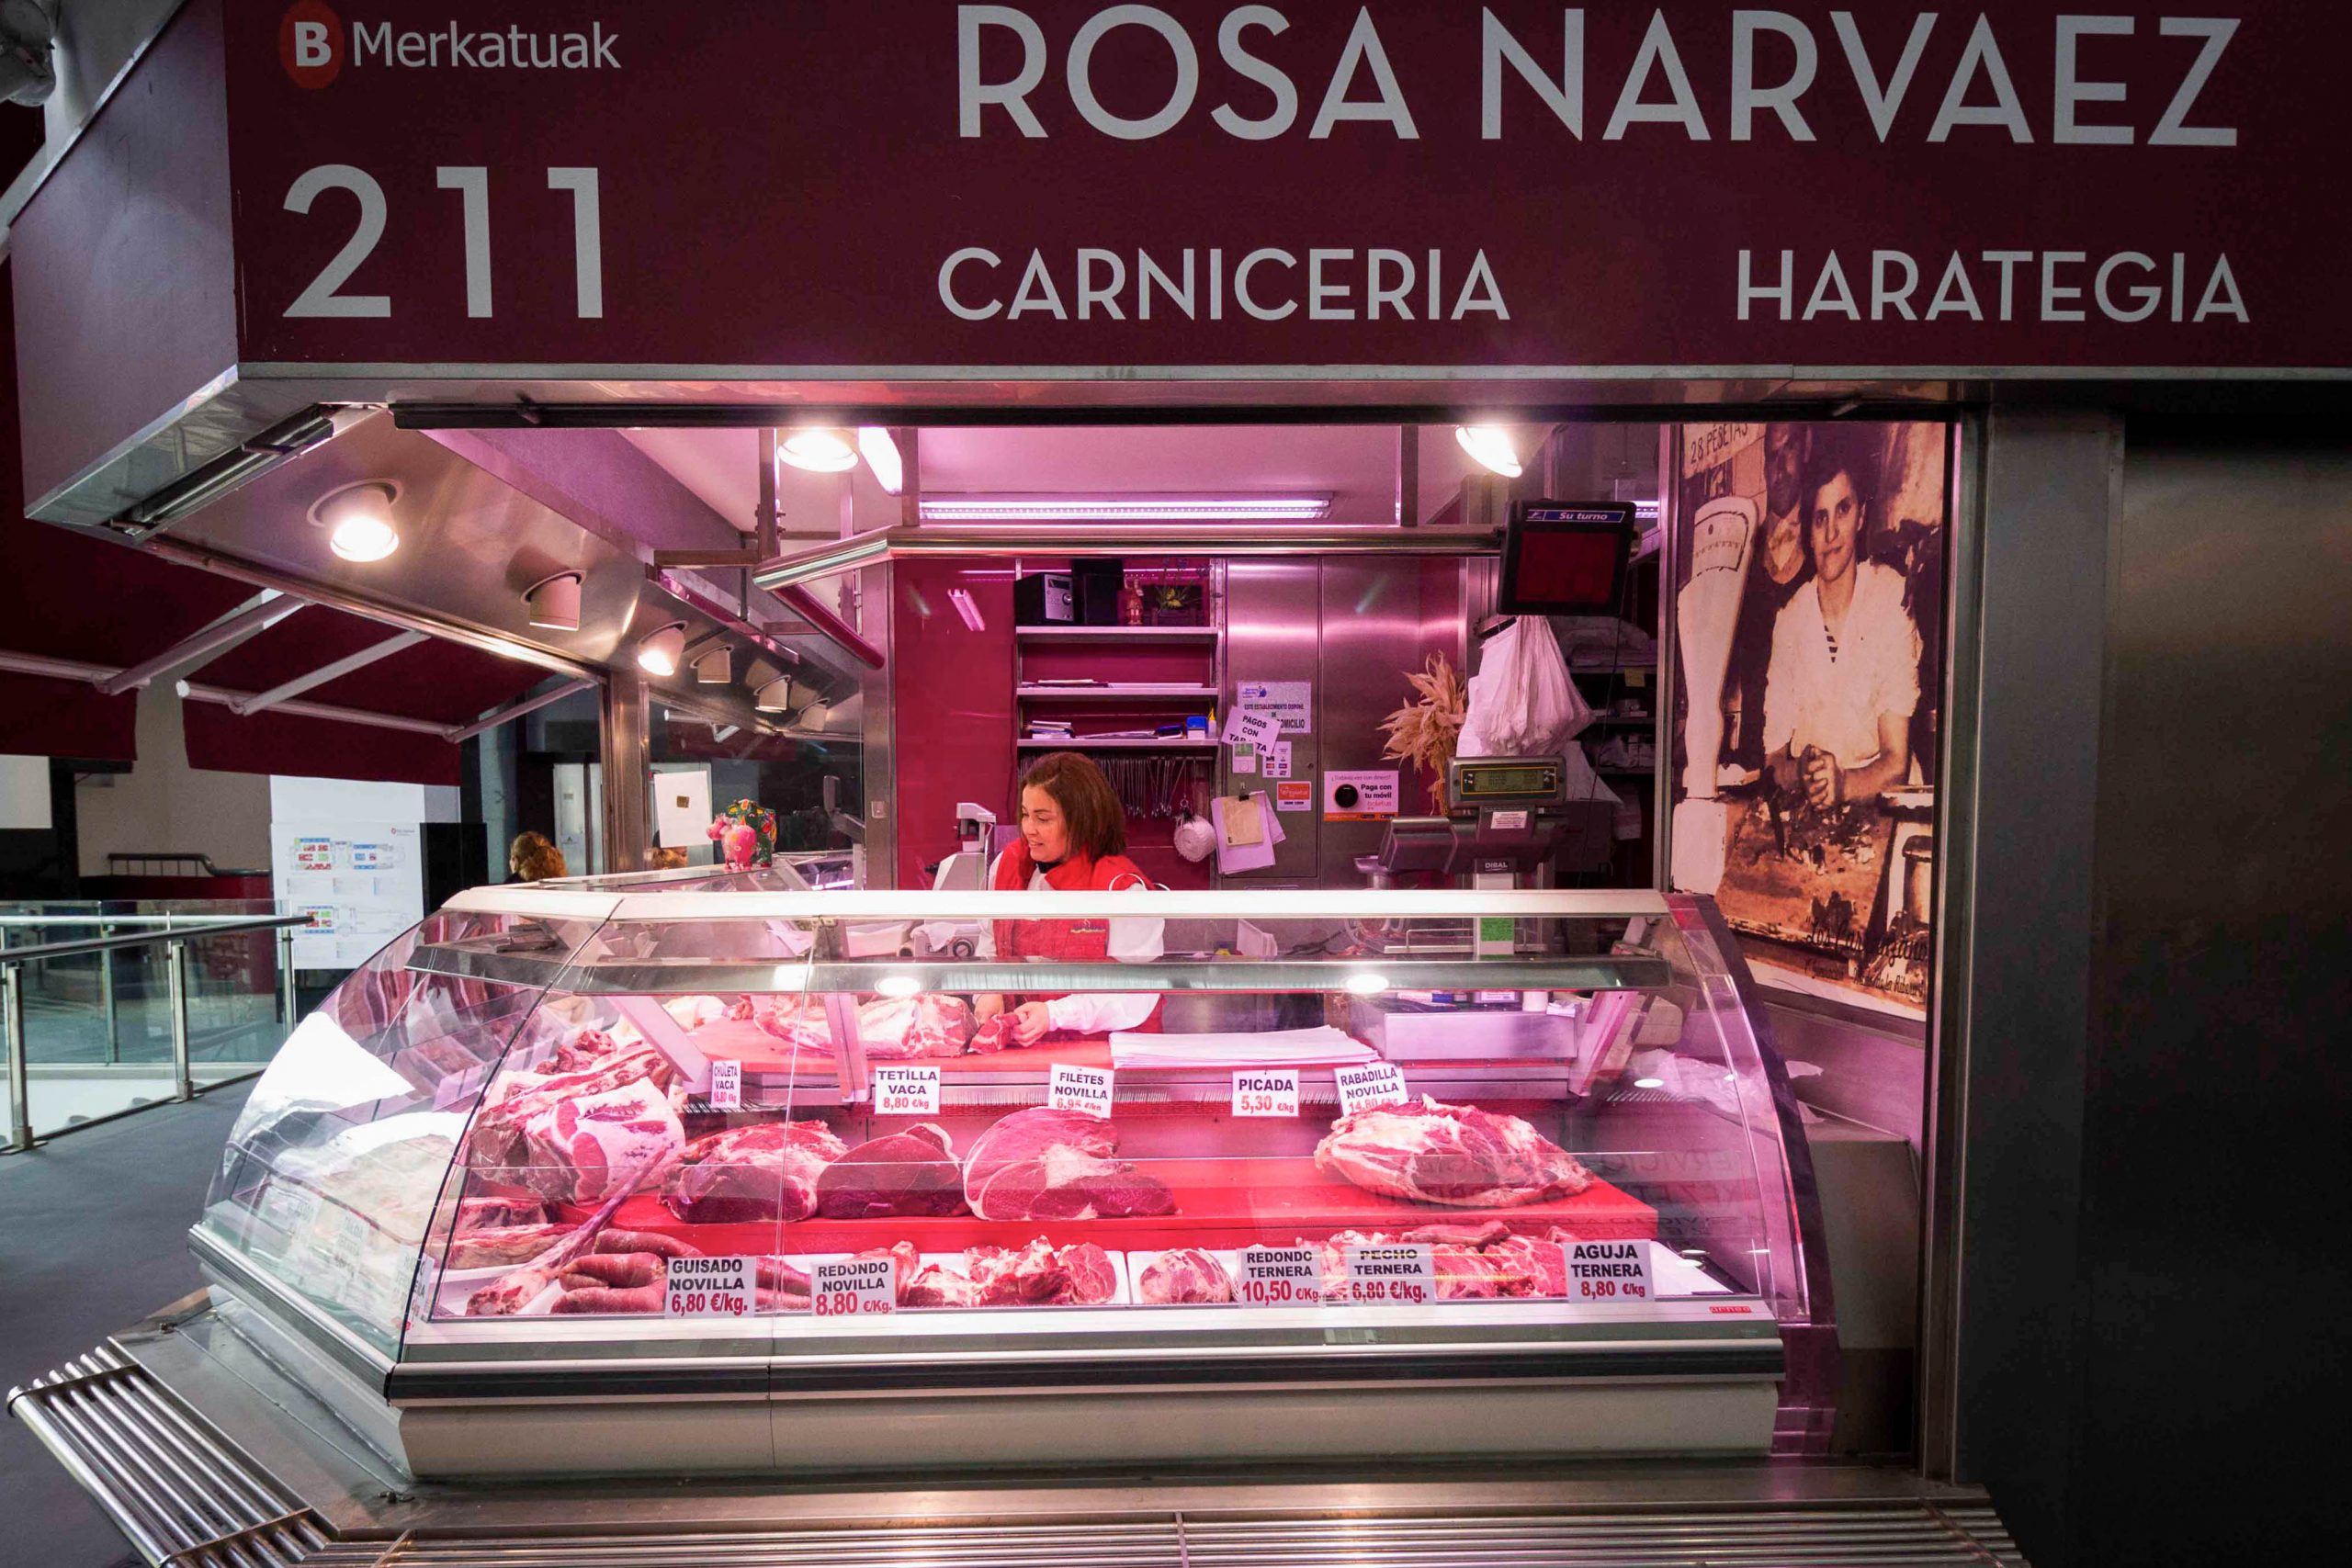 Carnicería Rosa Narvaez